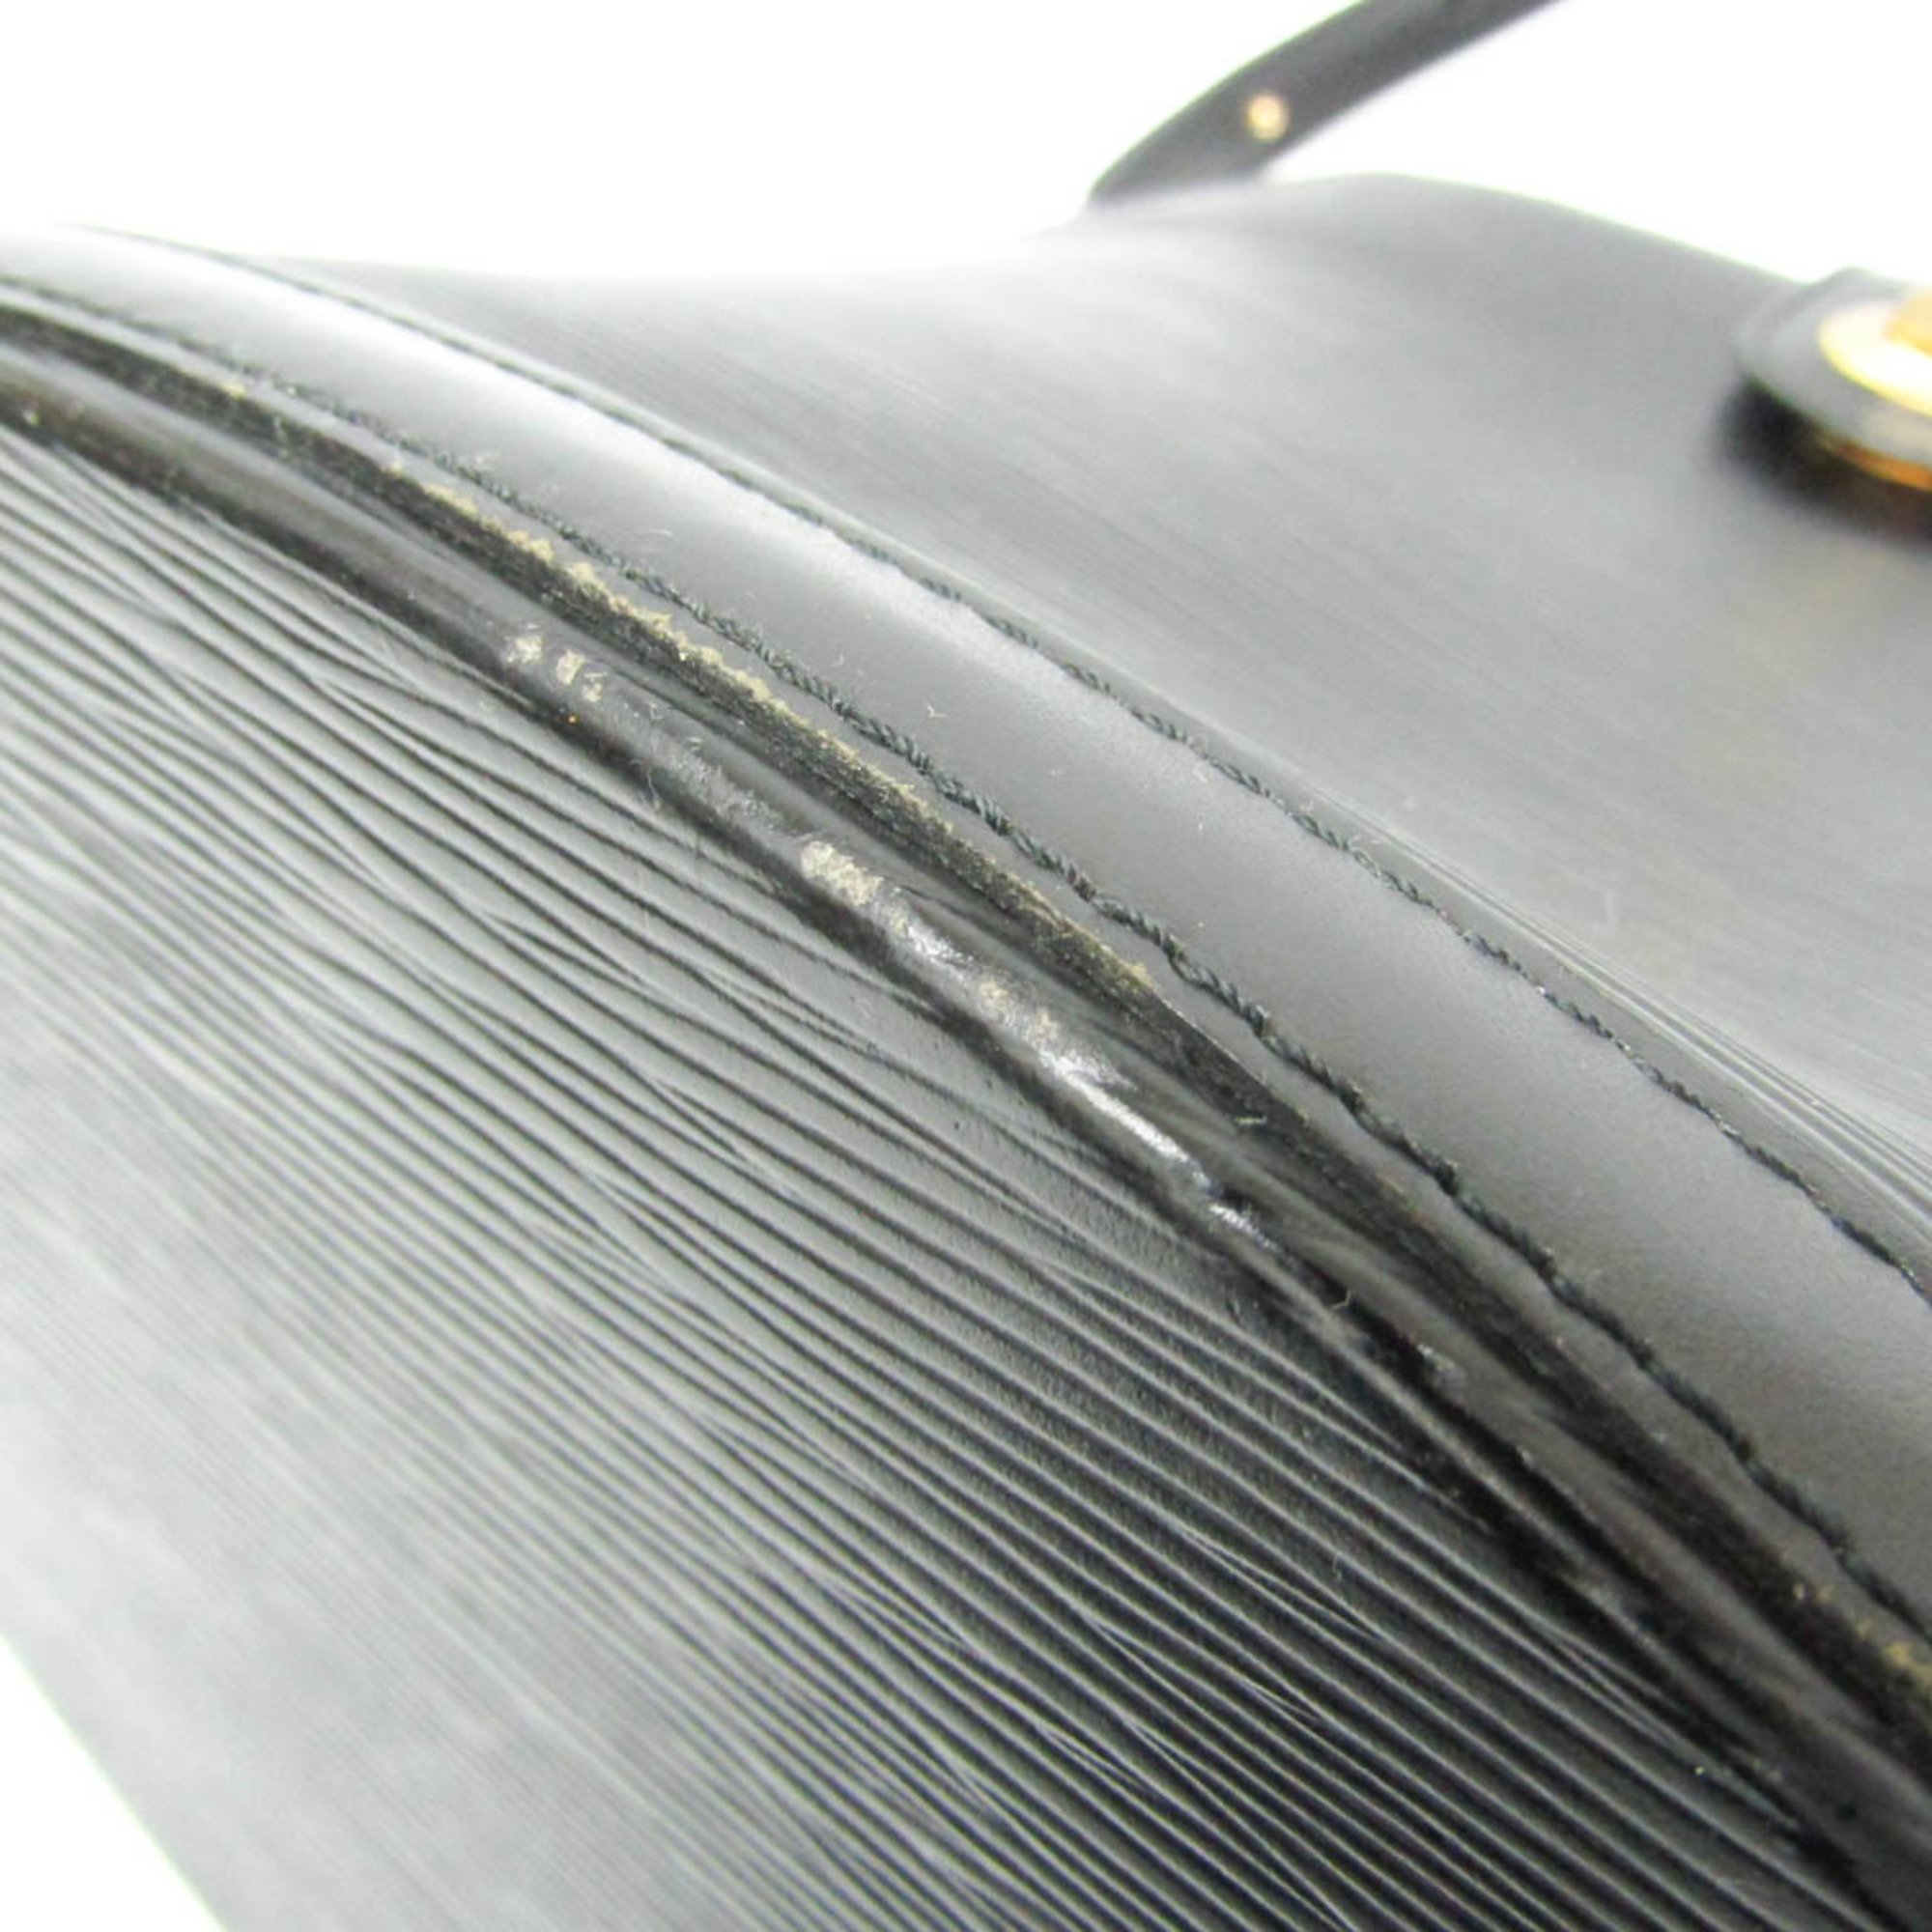 Louis Vuitton Epi Cluny M52252 Women's Shoulder Bag Noir